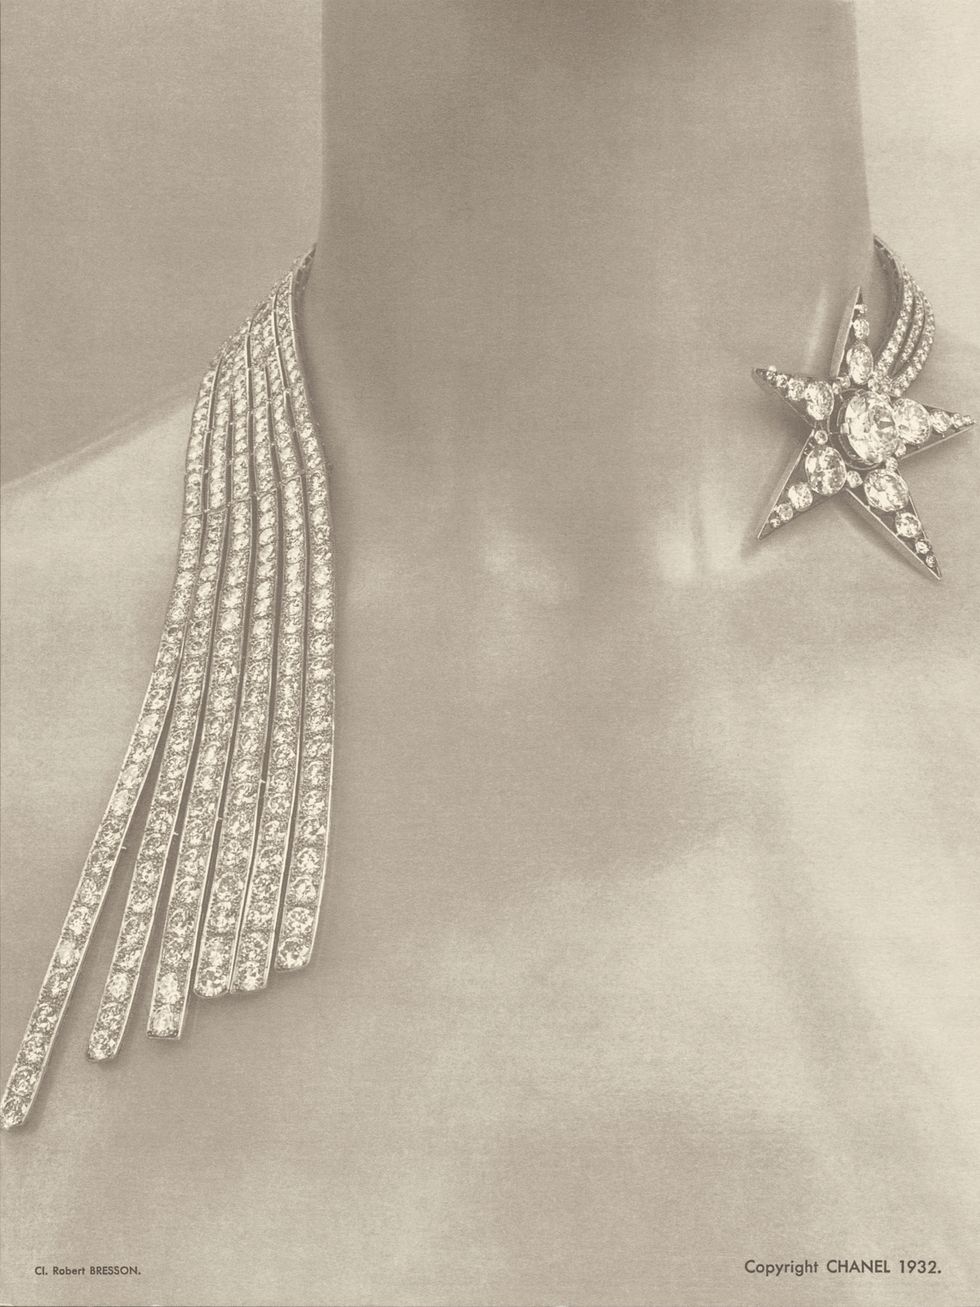 chanel 1932頂級珠寶系列歷史照